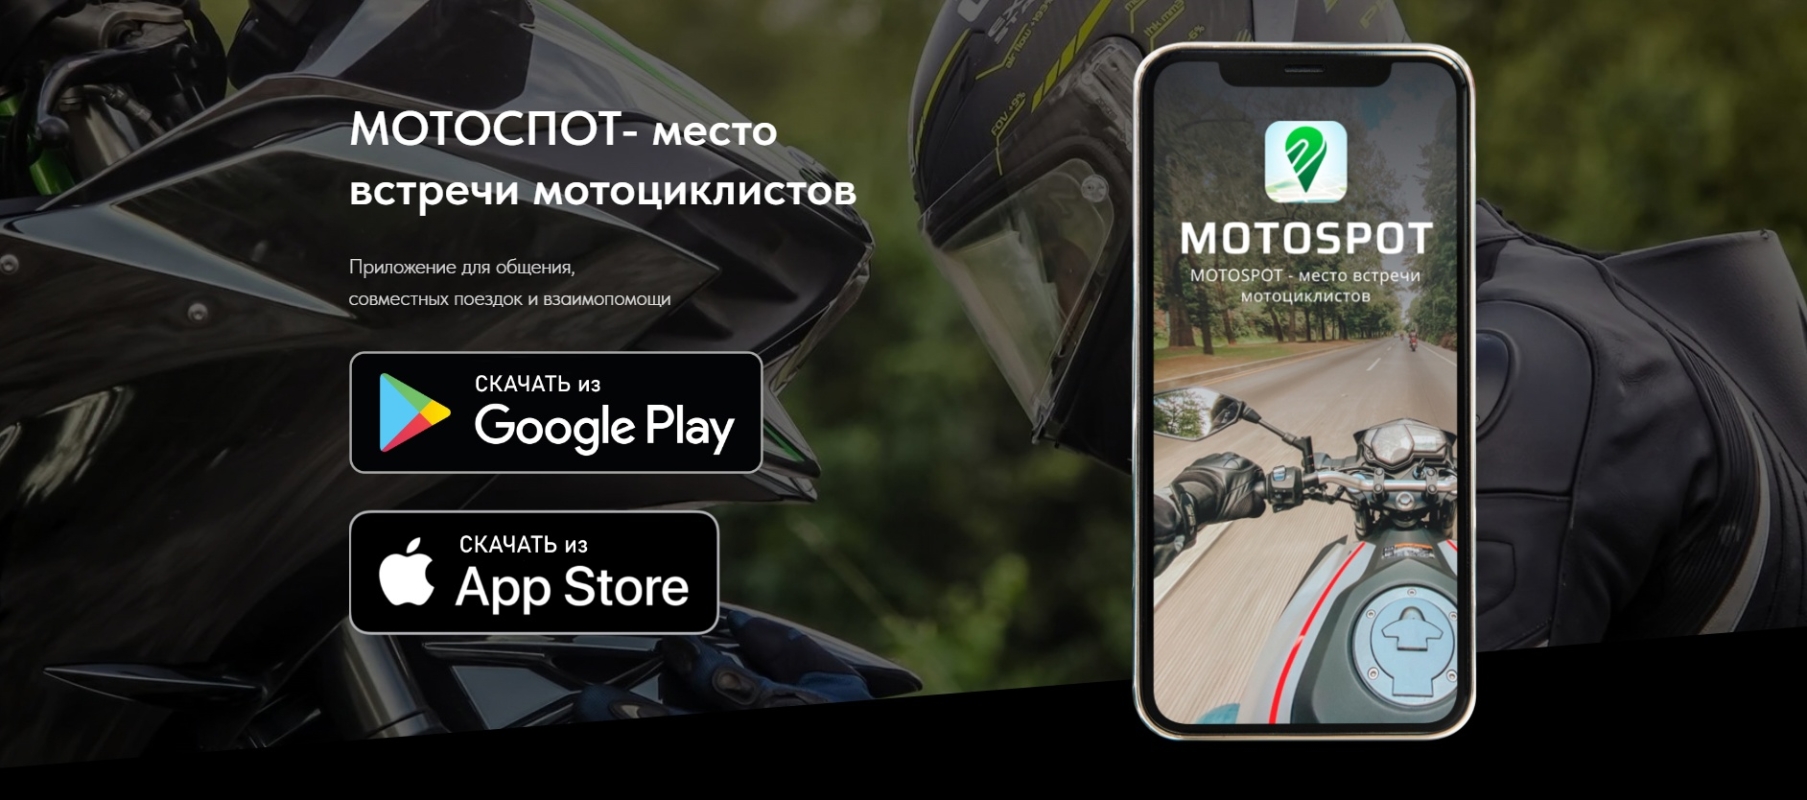 Компания из Беларуси представила социальную сеть для мотоциклистов